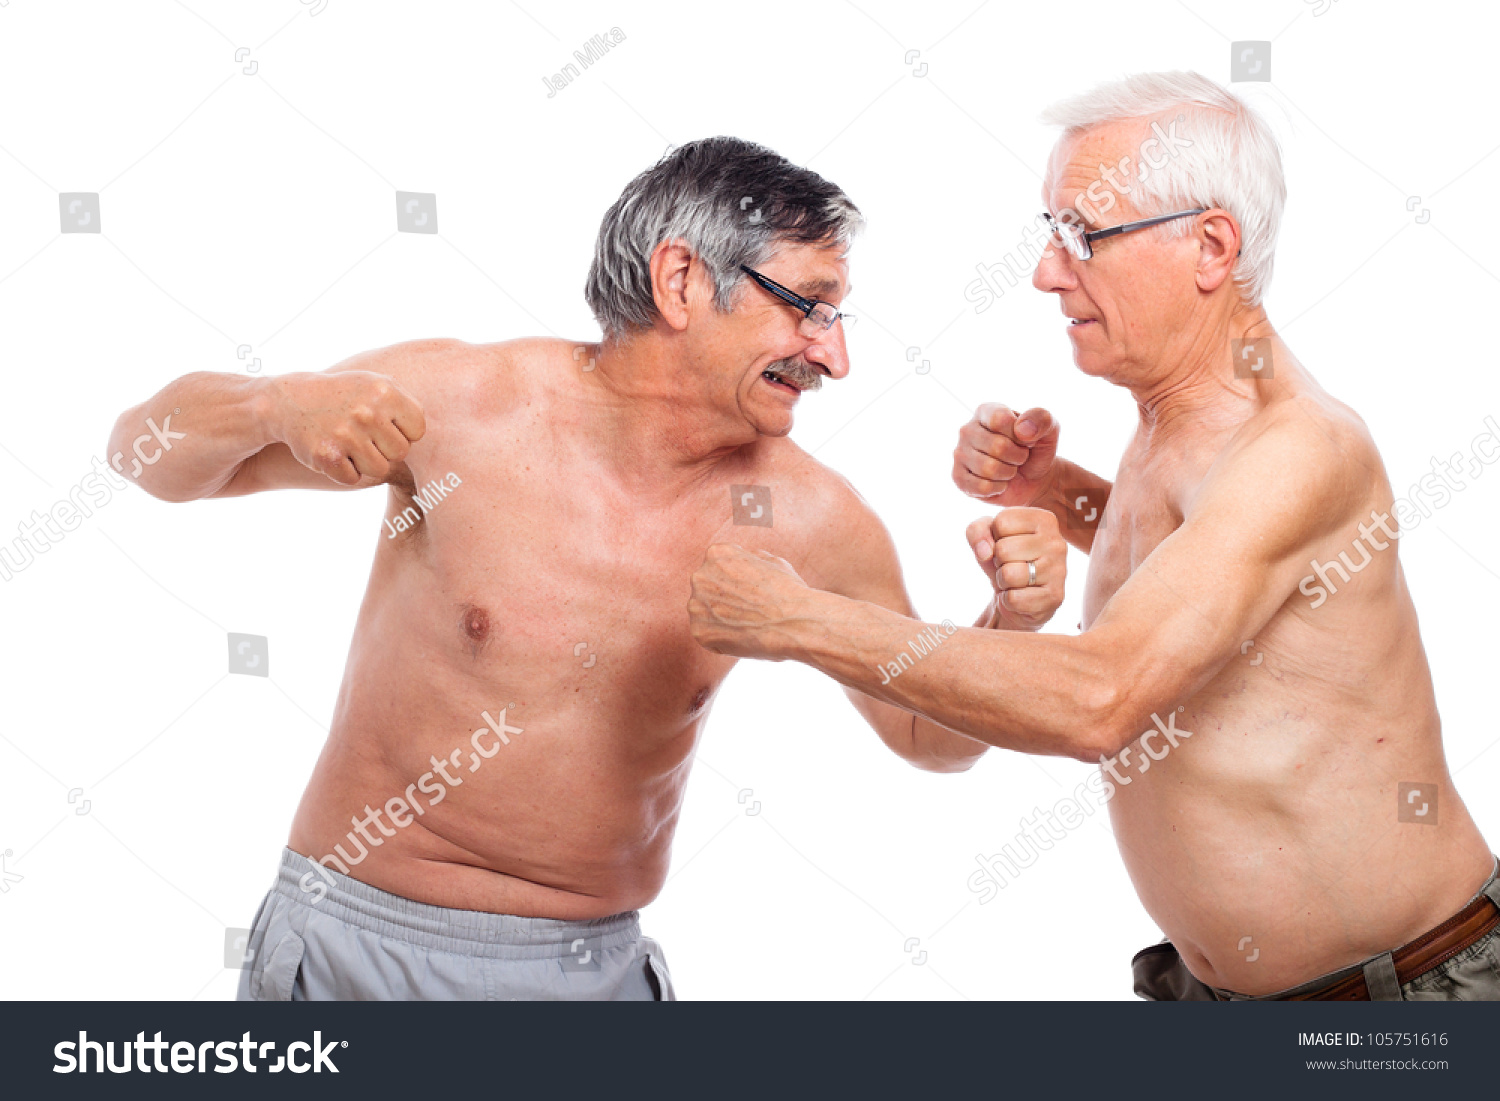 stock-photo-two-naked-senior-men-fightin